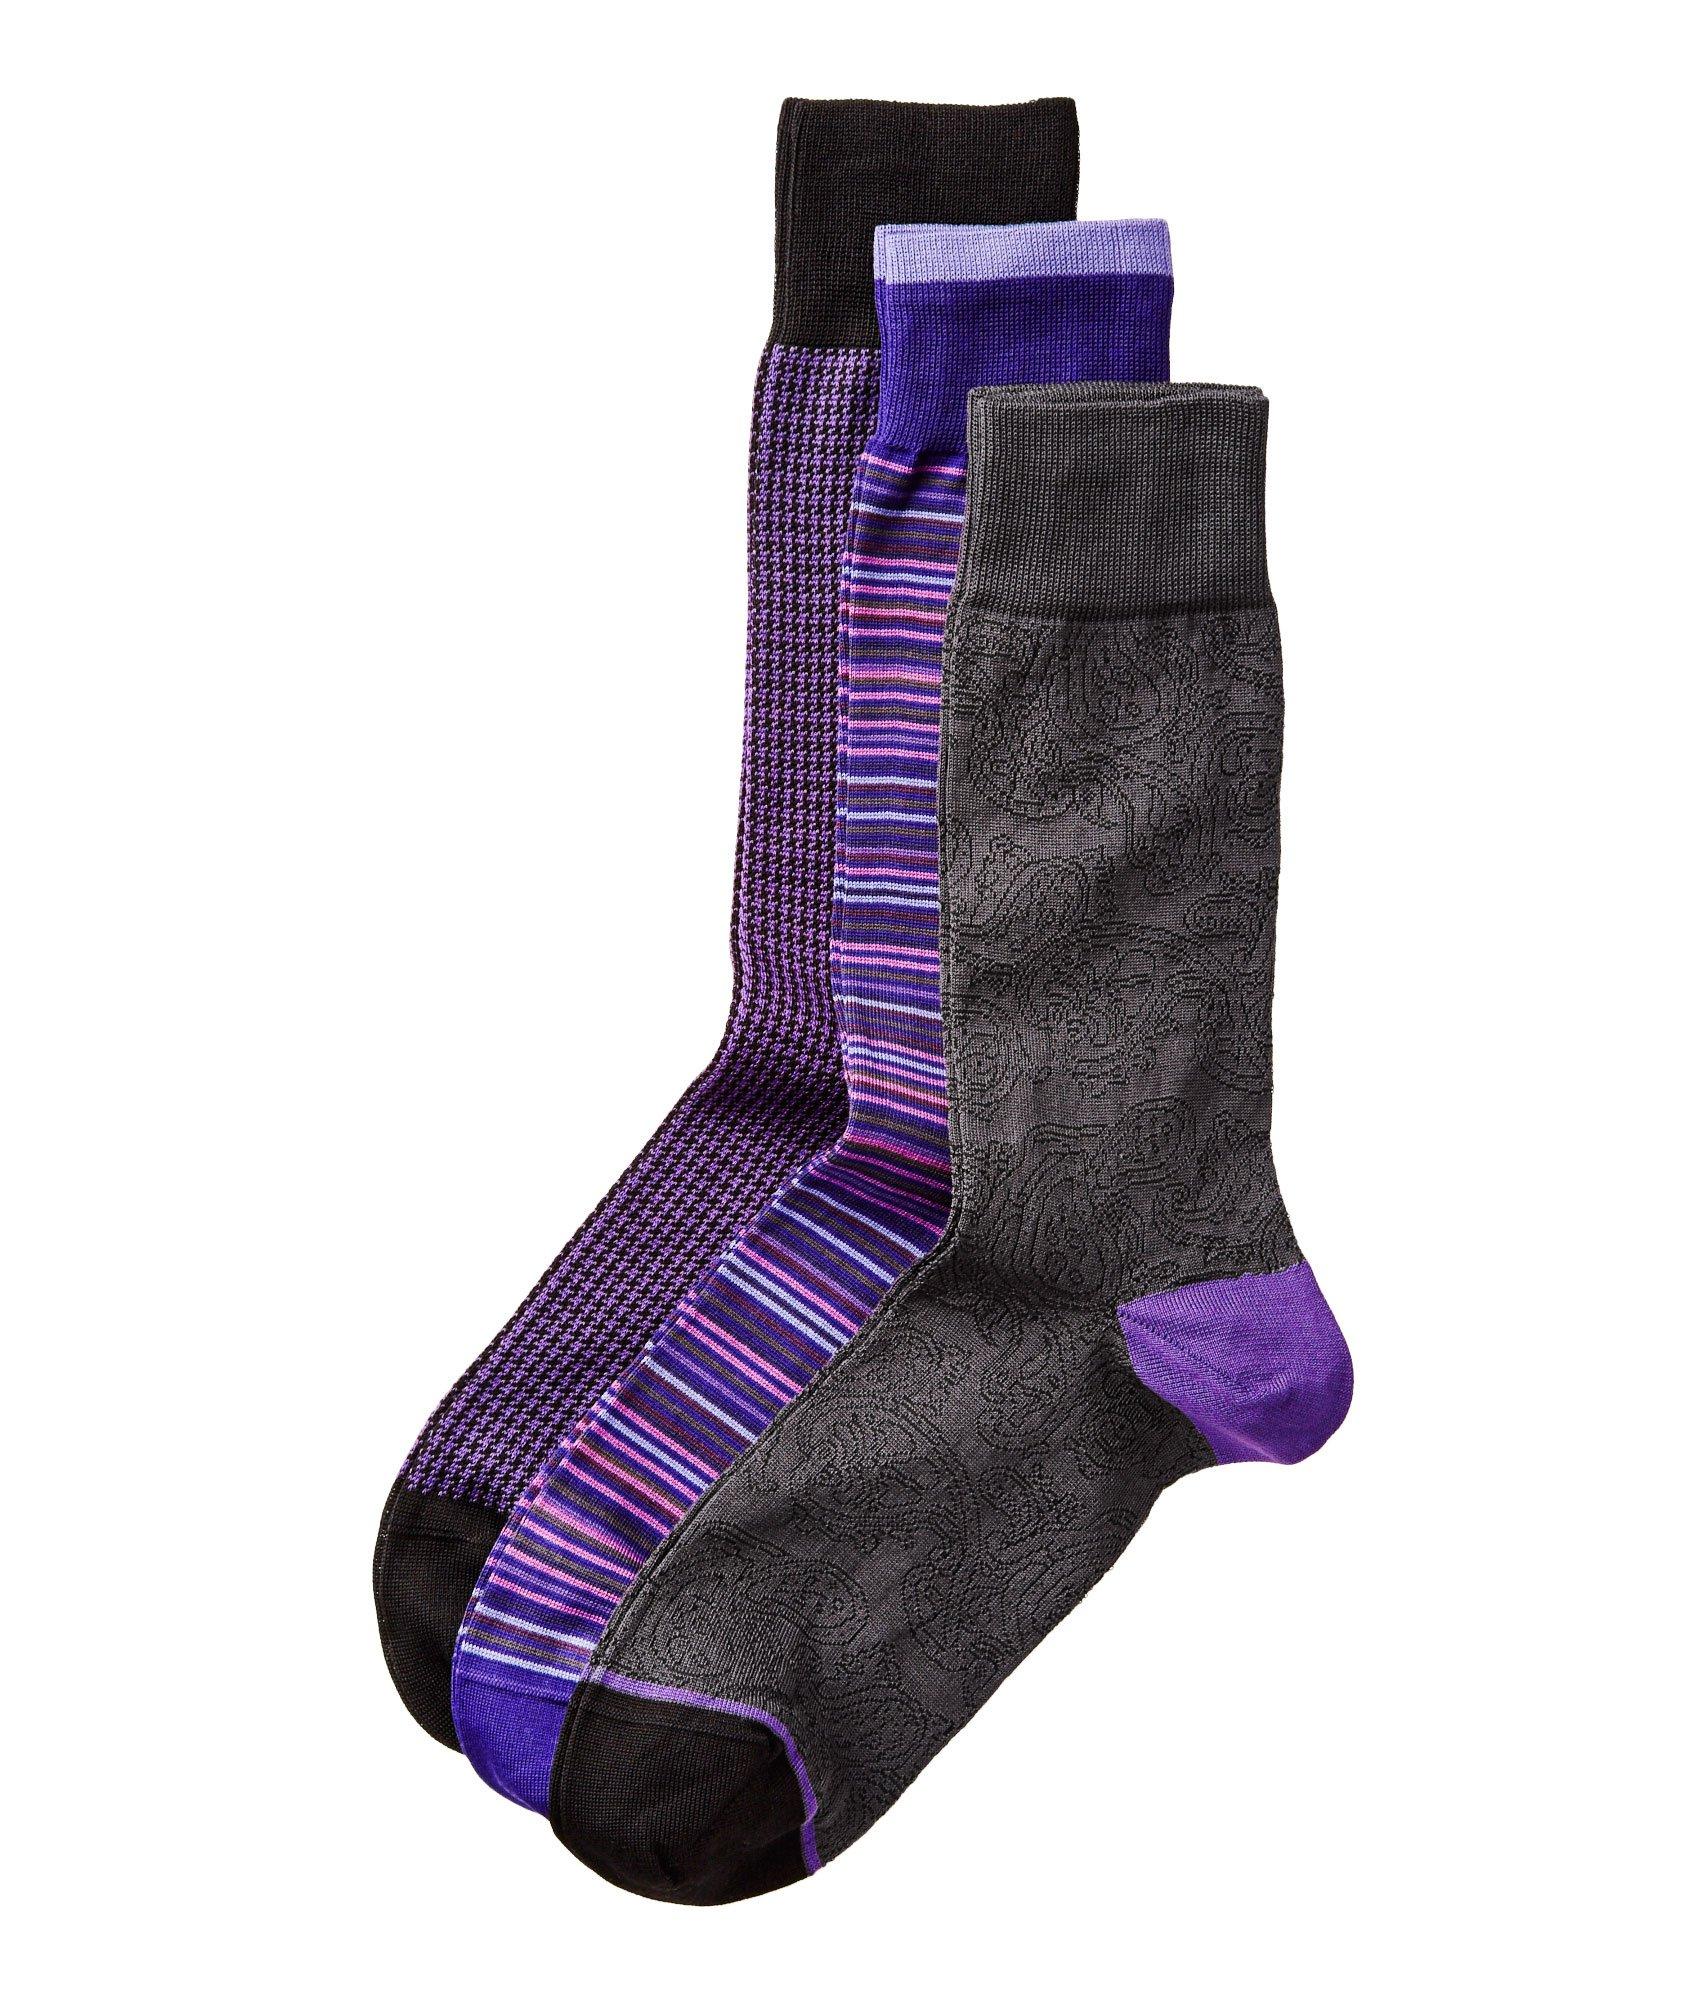 Three Pack Multi-Coloured Socks  image 0